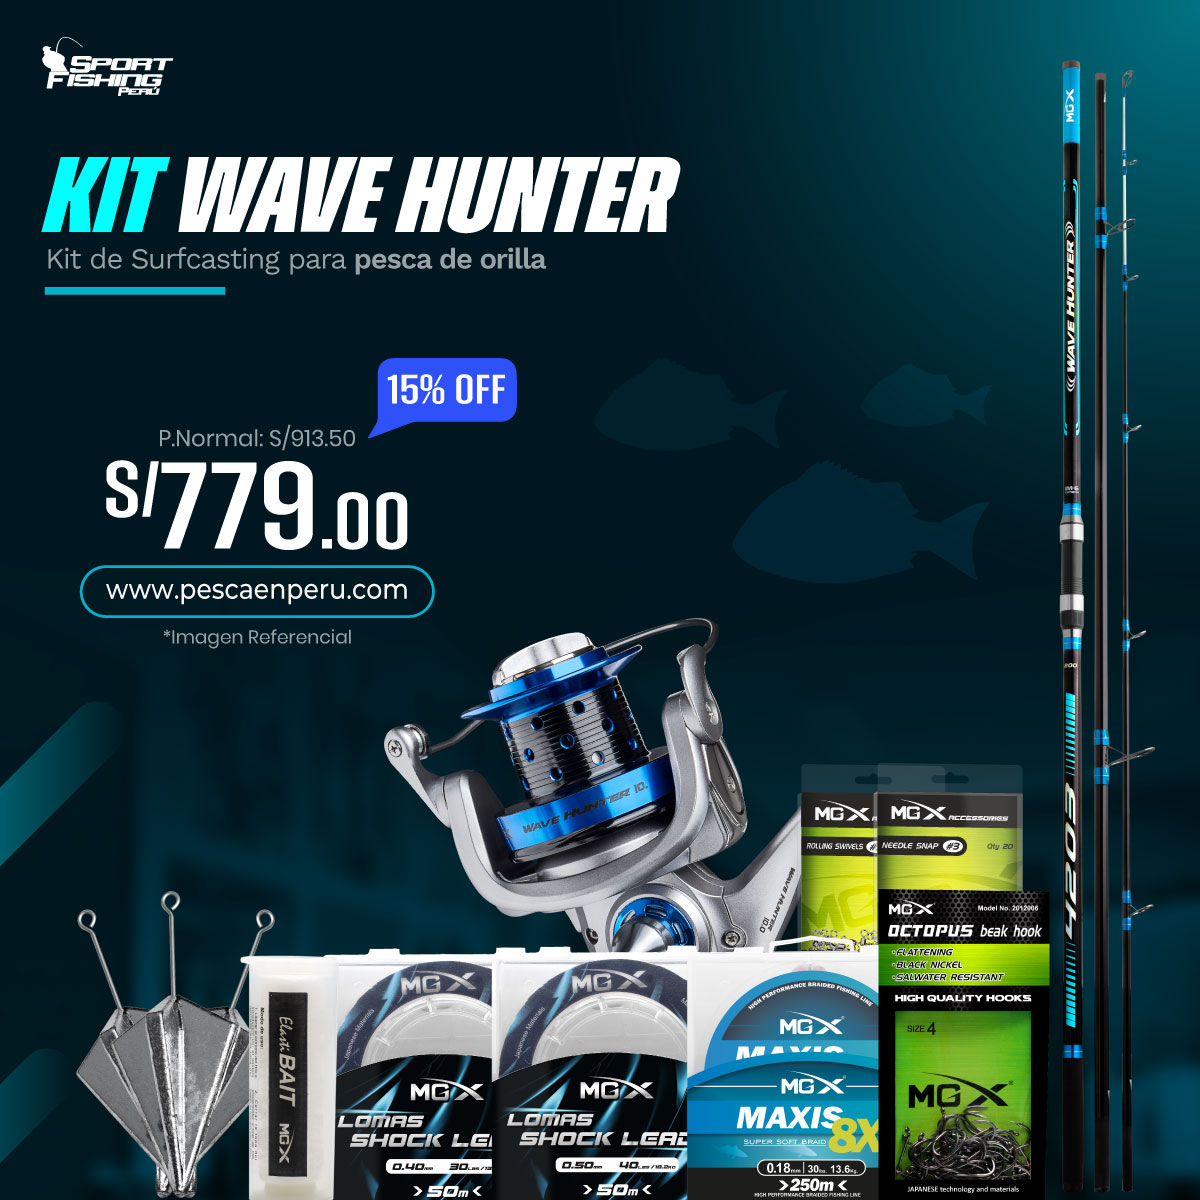 24 kit de surfcasting wave hunter 2